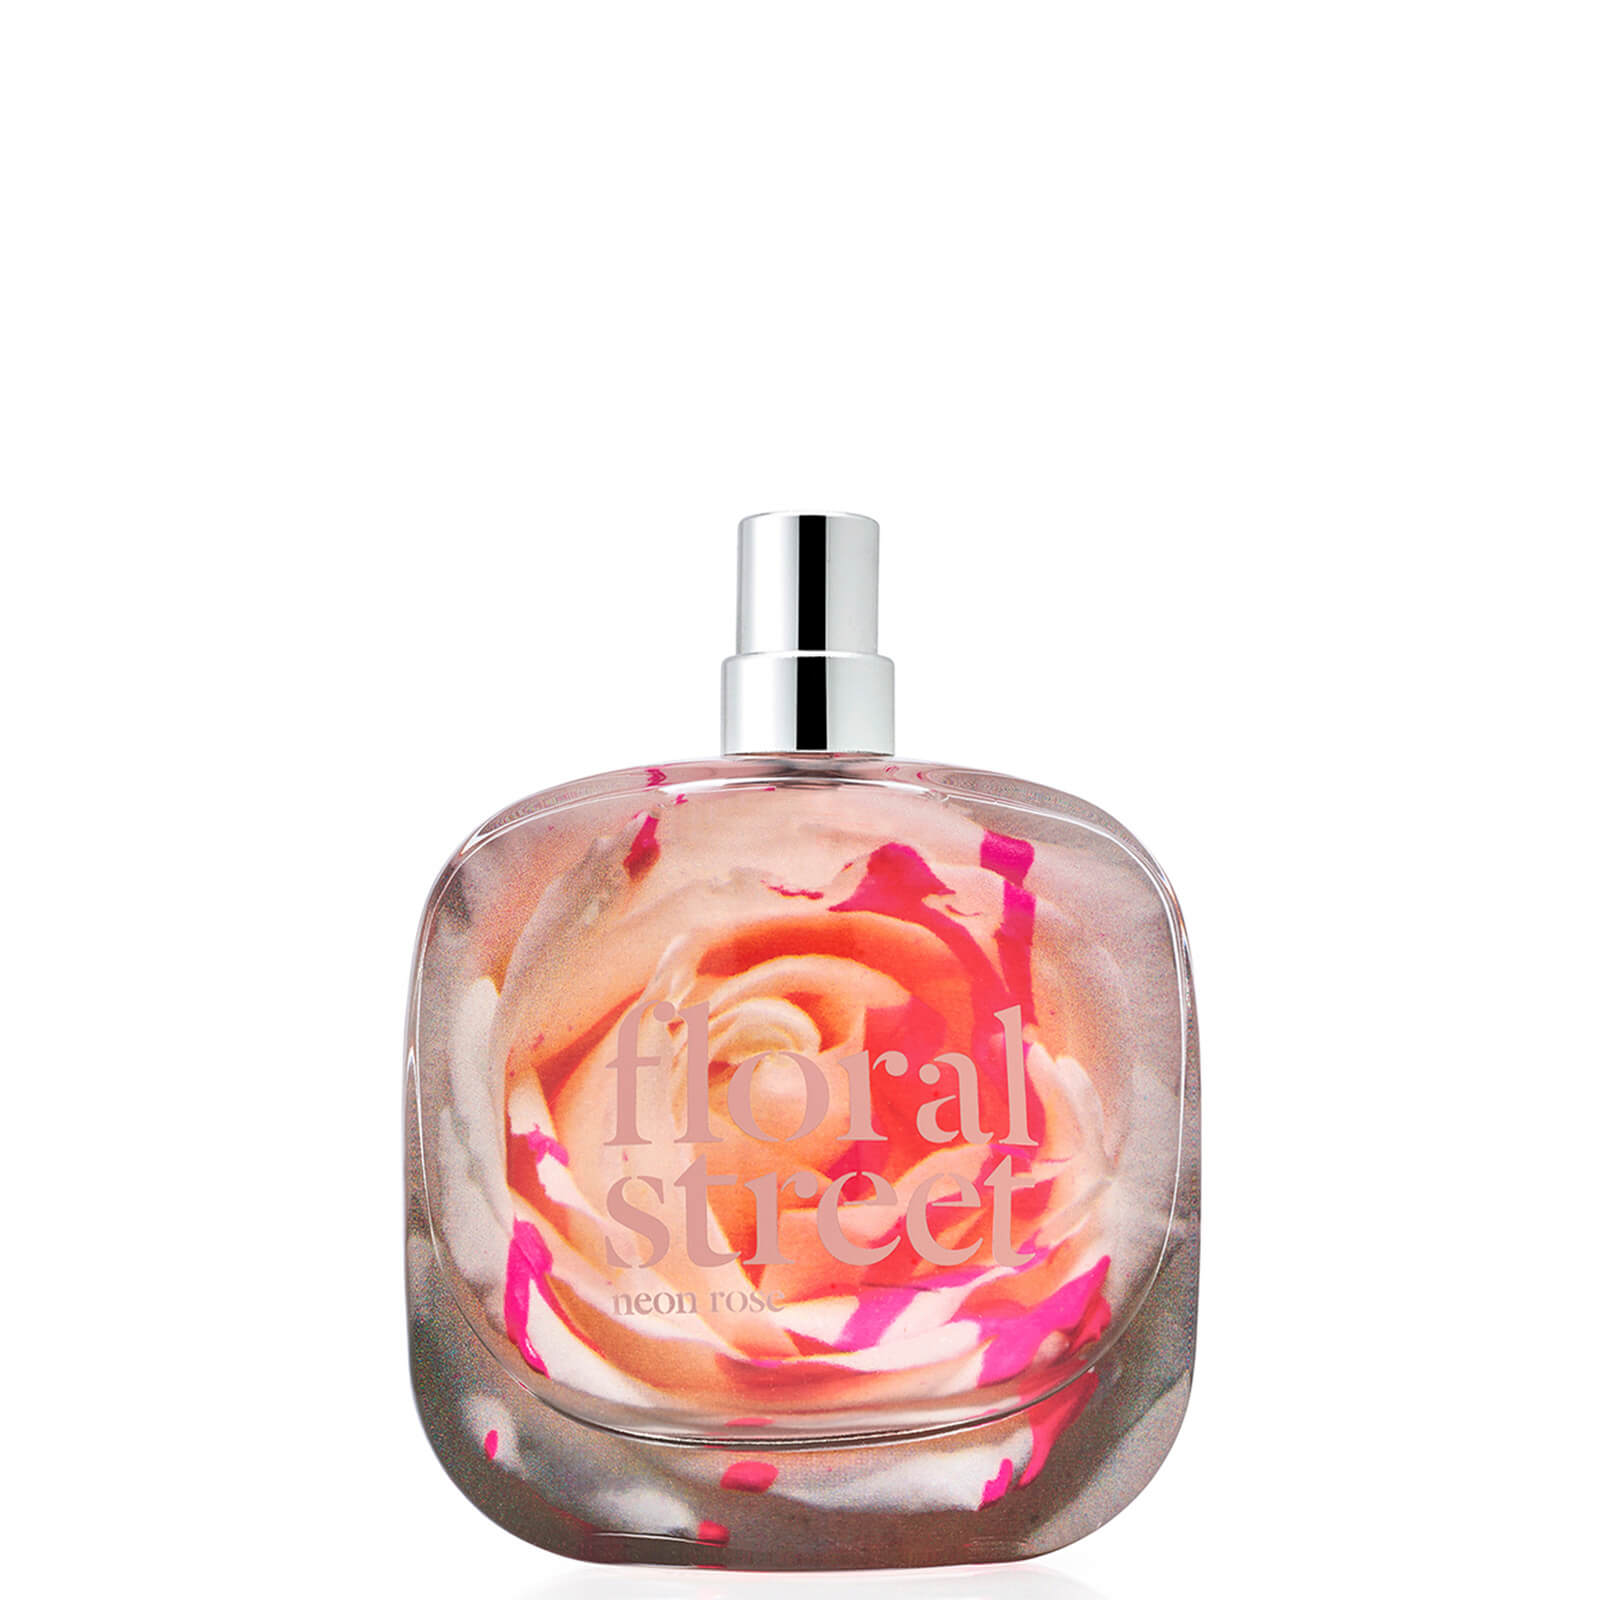 Image of Floral Street Neon Rose Eau de Parfum 100ml